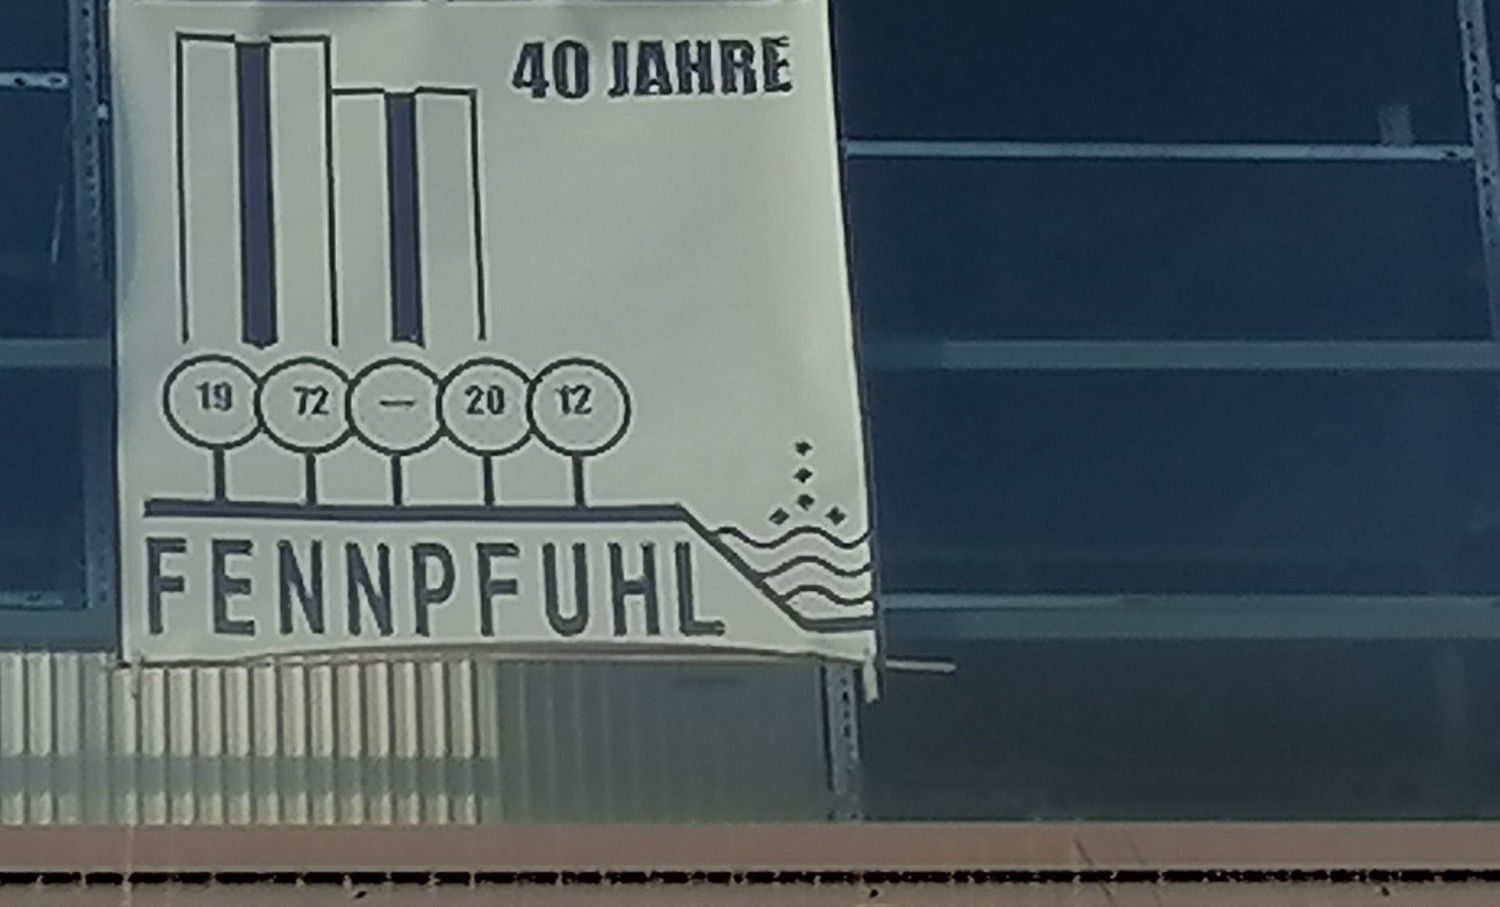 Plakat "40 Jahre Fennpfuhl" an einem Fenster am Anton-Saefkow-Platz in Berlin-Lichtenberg